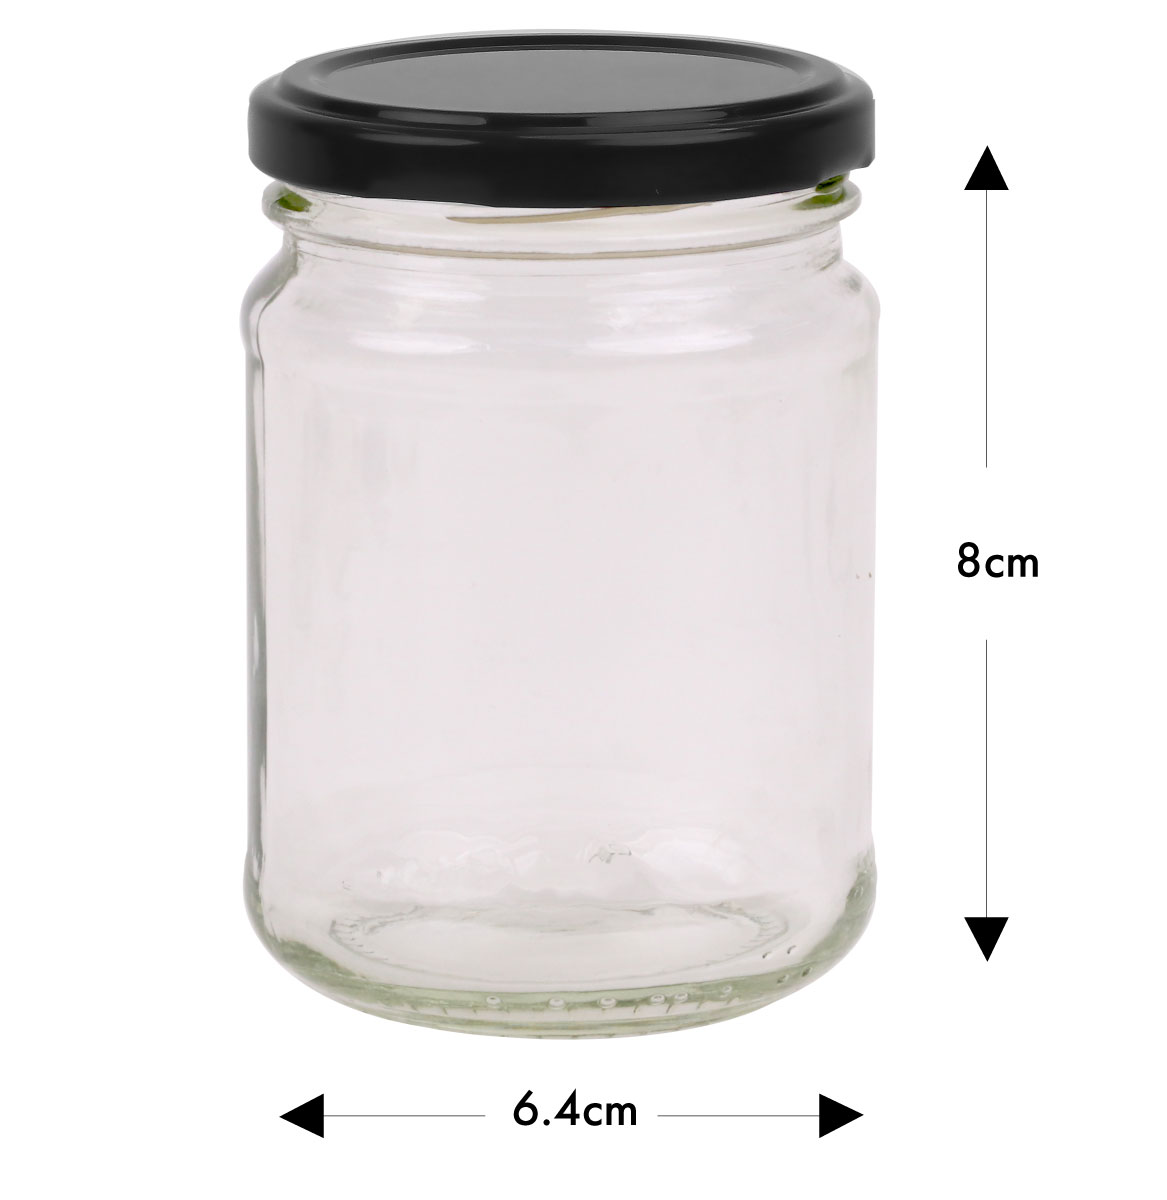 Round Glass Jar - 250ml / 350gm size - with Black Lid